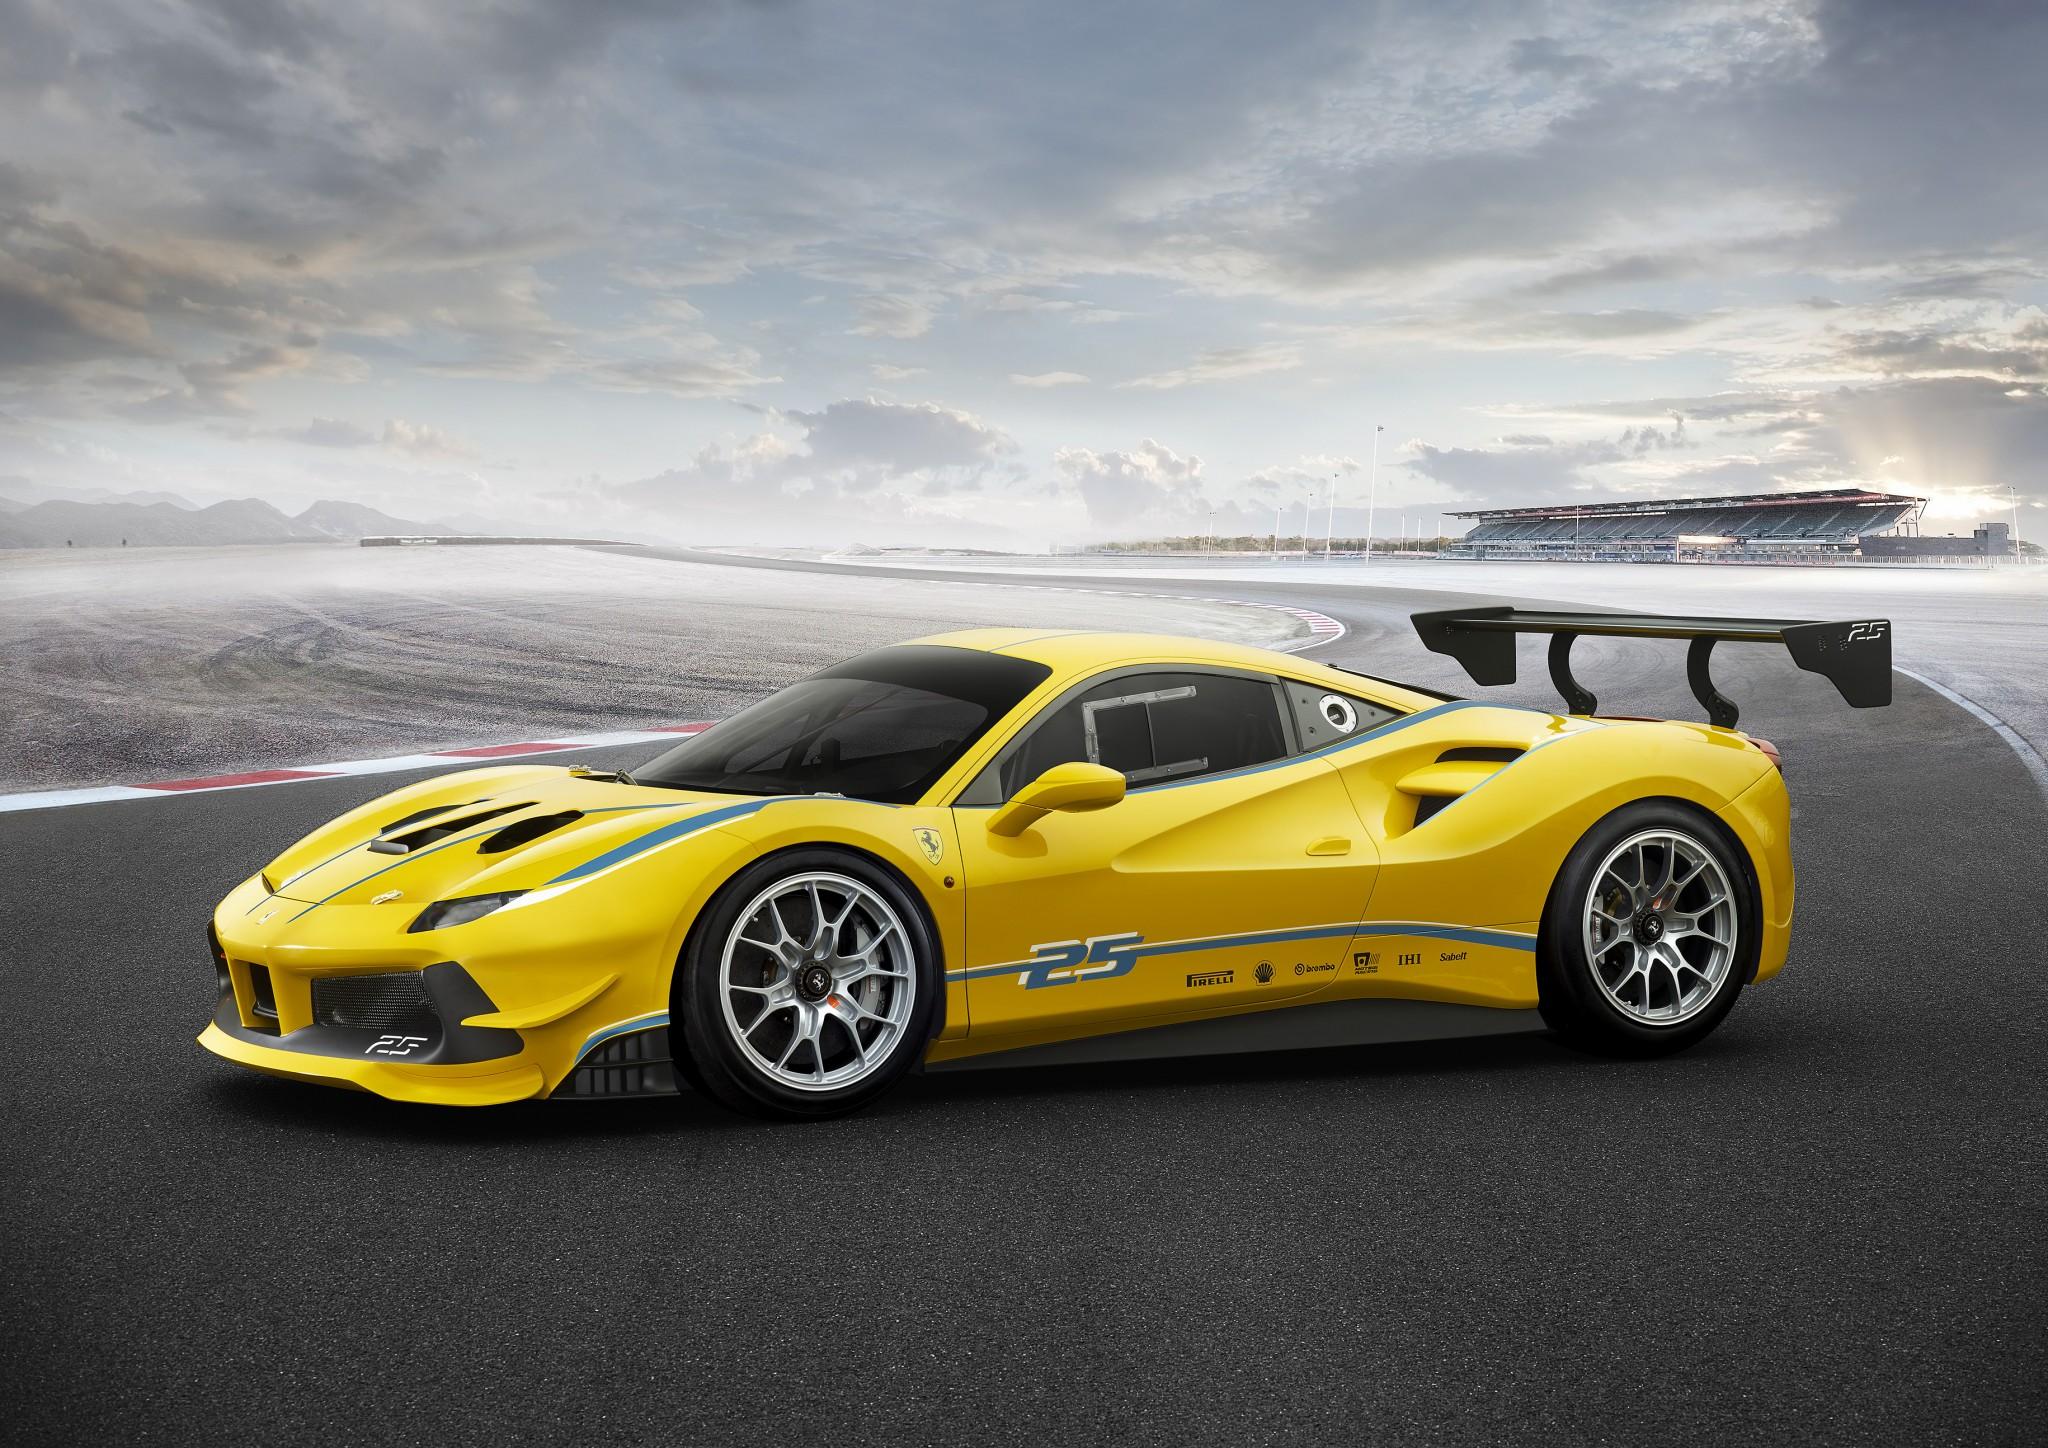 Ferrari Announces Unveils a New Challenge Racecar: The 488